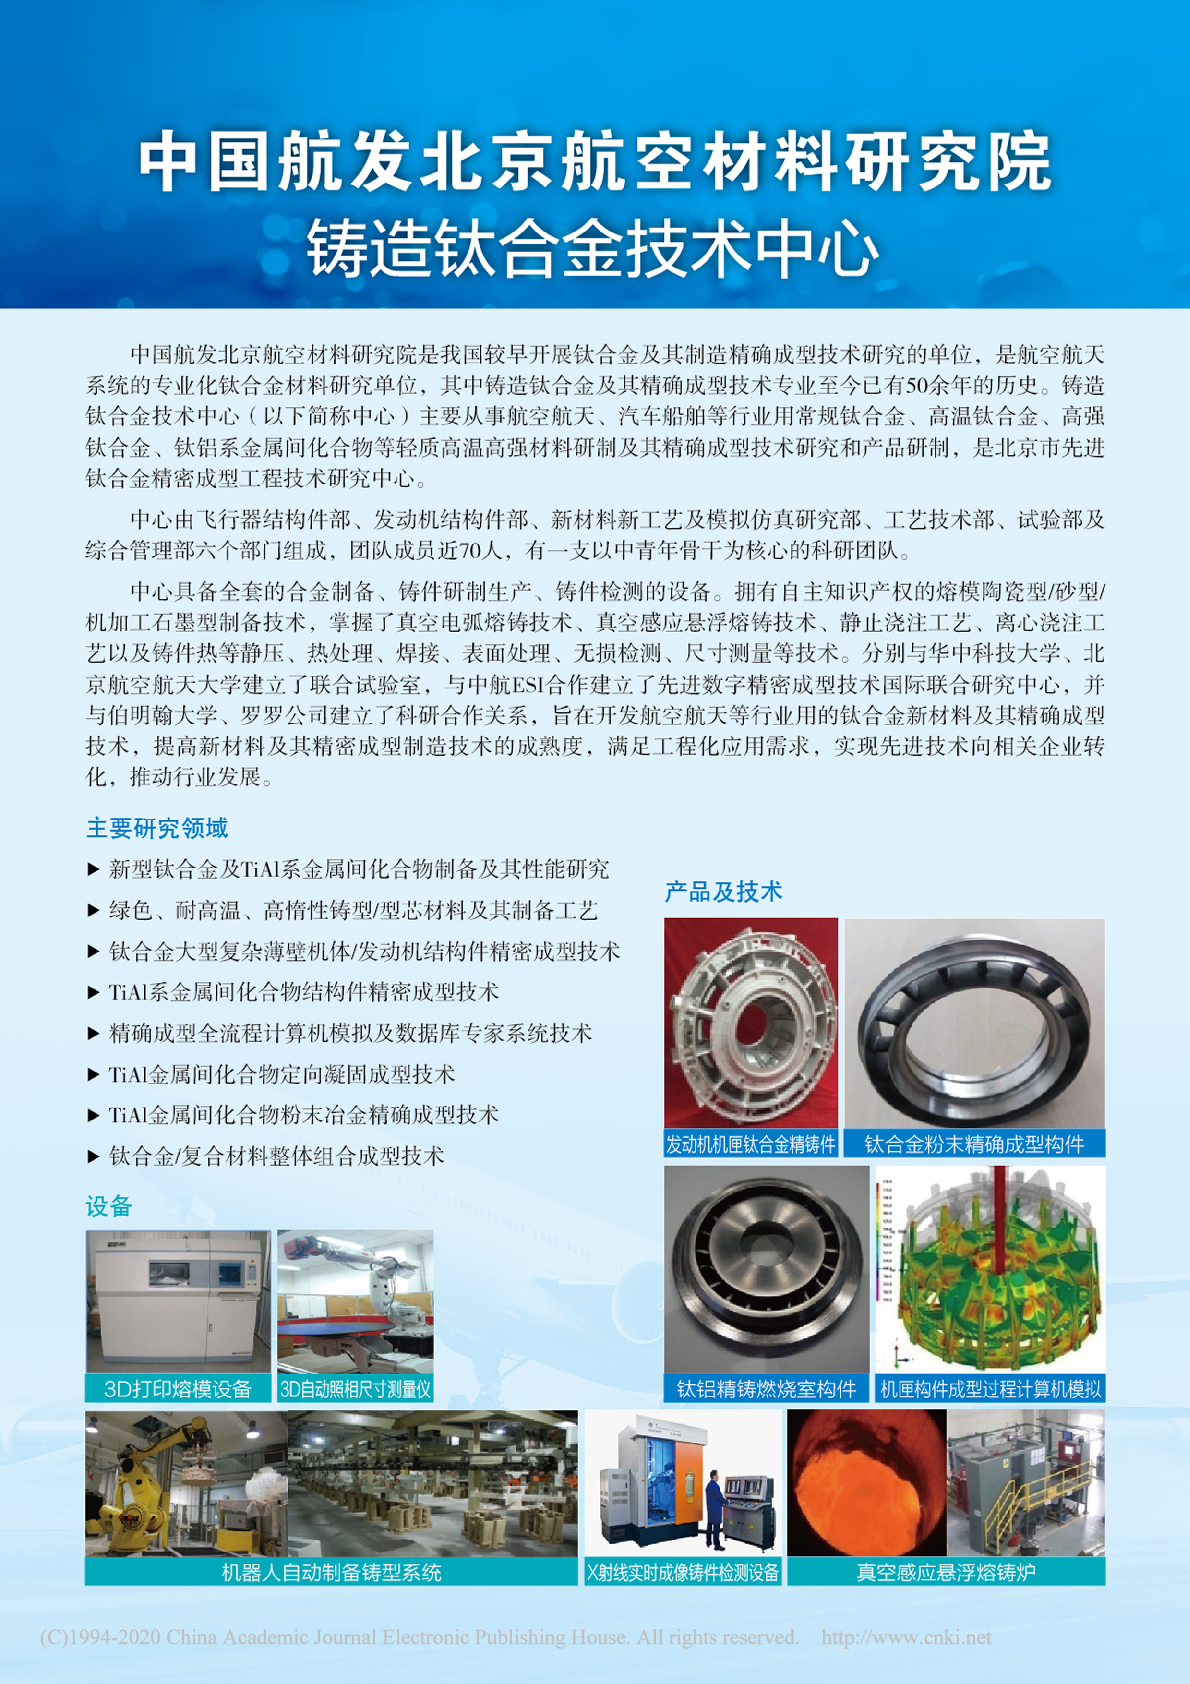 中国航发北京航空材料研究院铸造钛合金技术中心